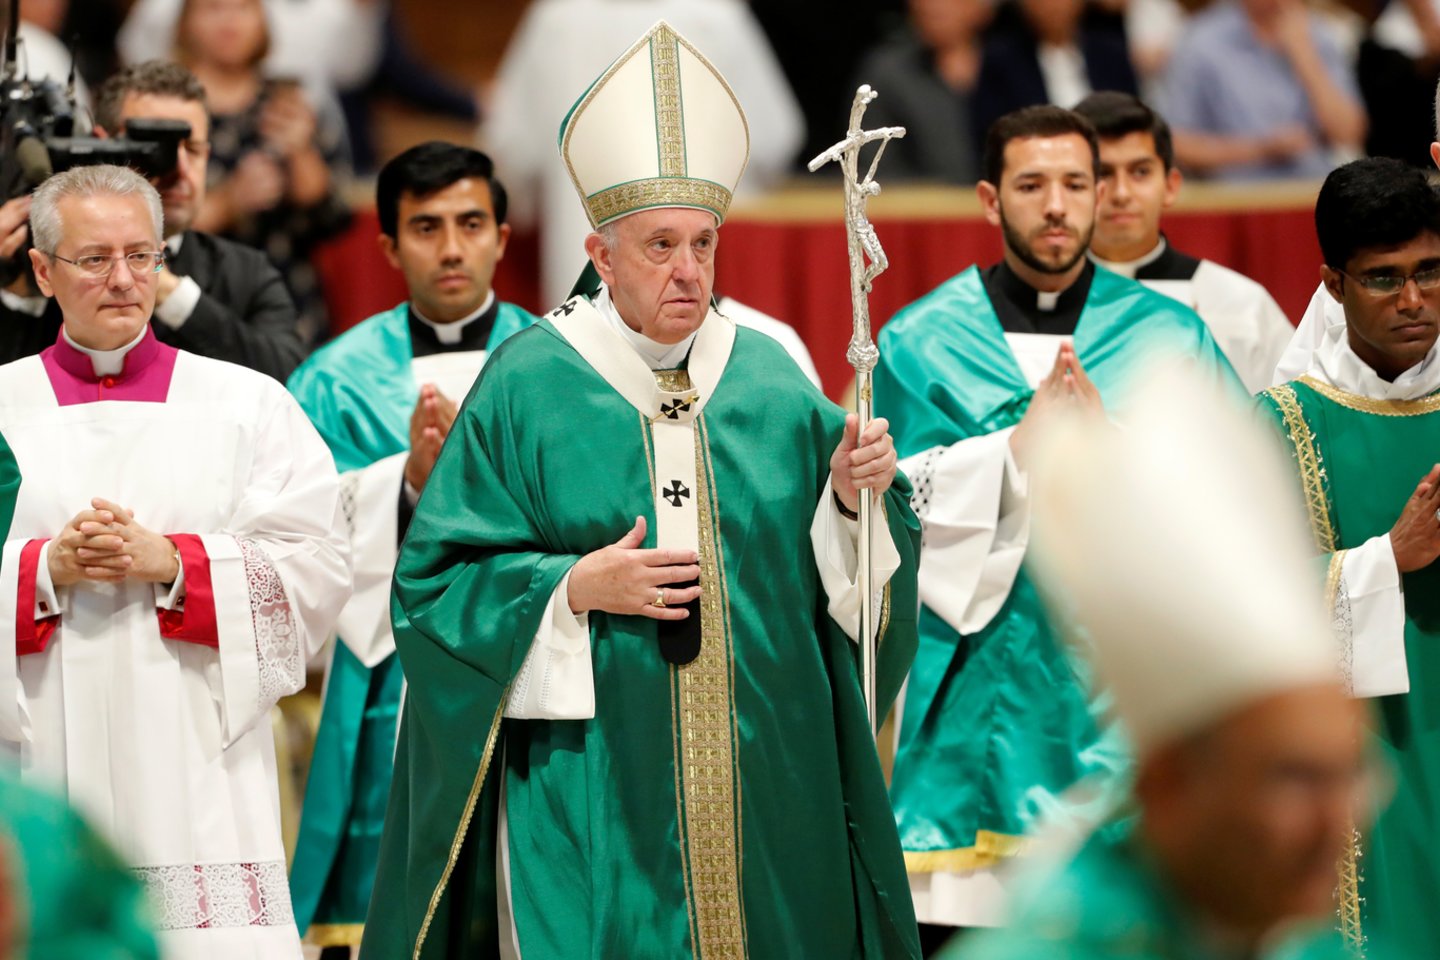 Vatikane sekmadienį susirinko pasaulio krikščioniškojo mokymo lyderiai bei Amazonės regiono bendruomenių vadai.<br>AFP/Scanpix nuotr.